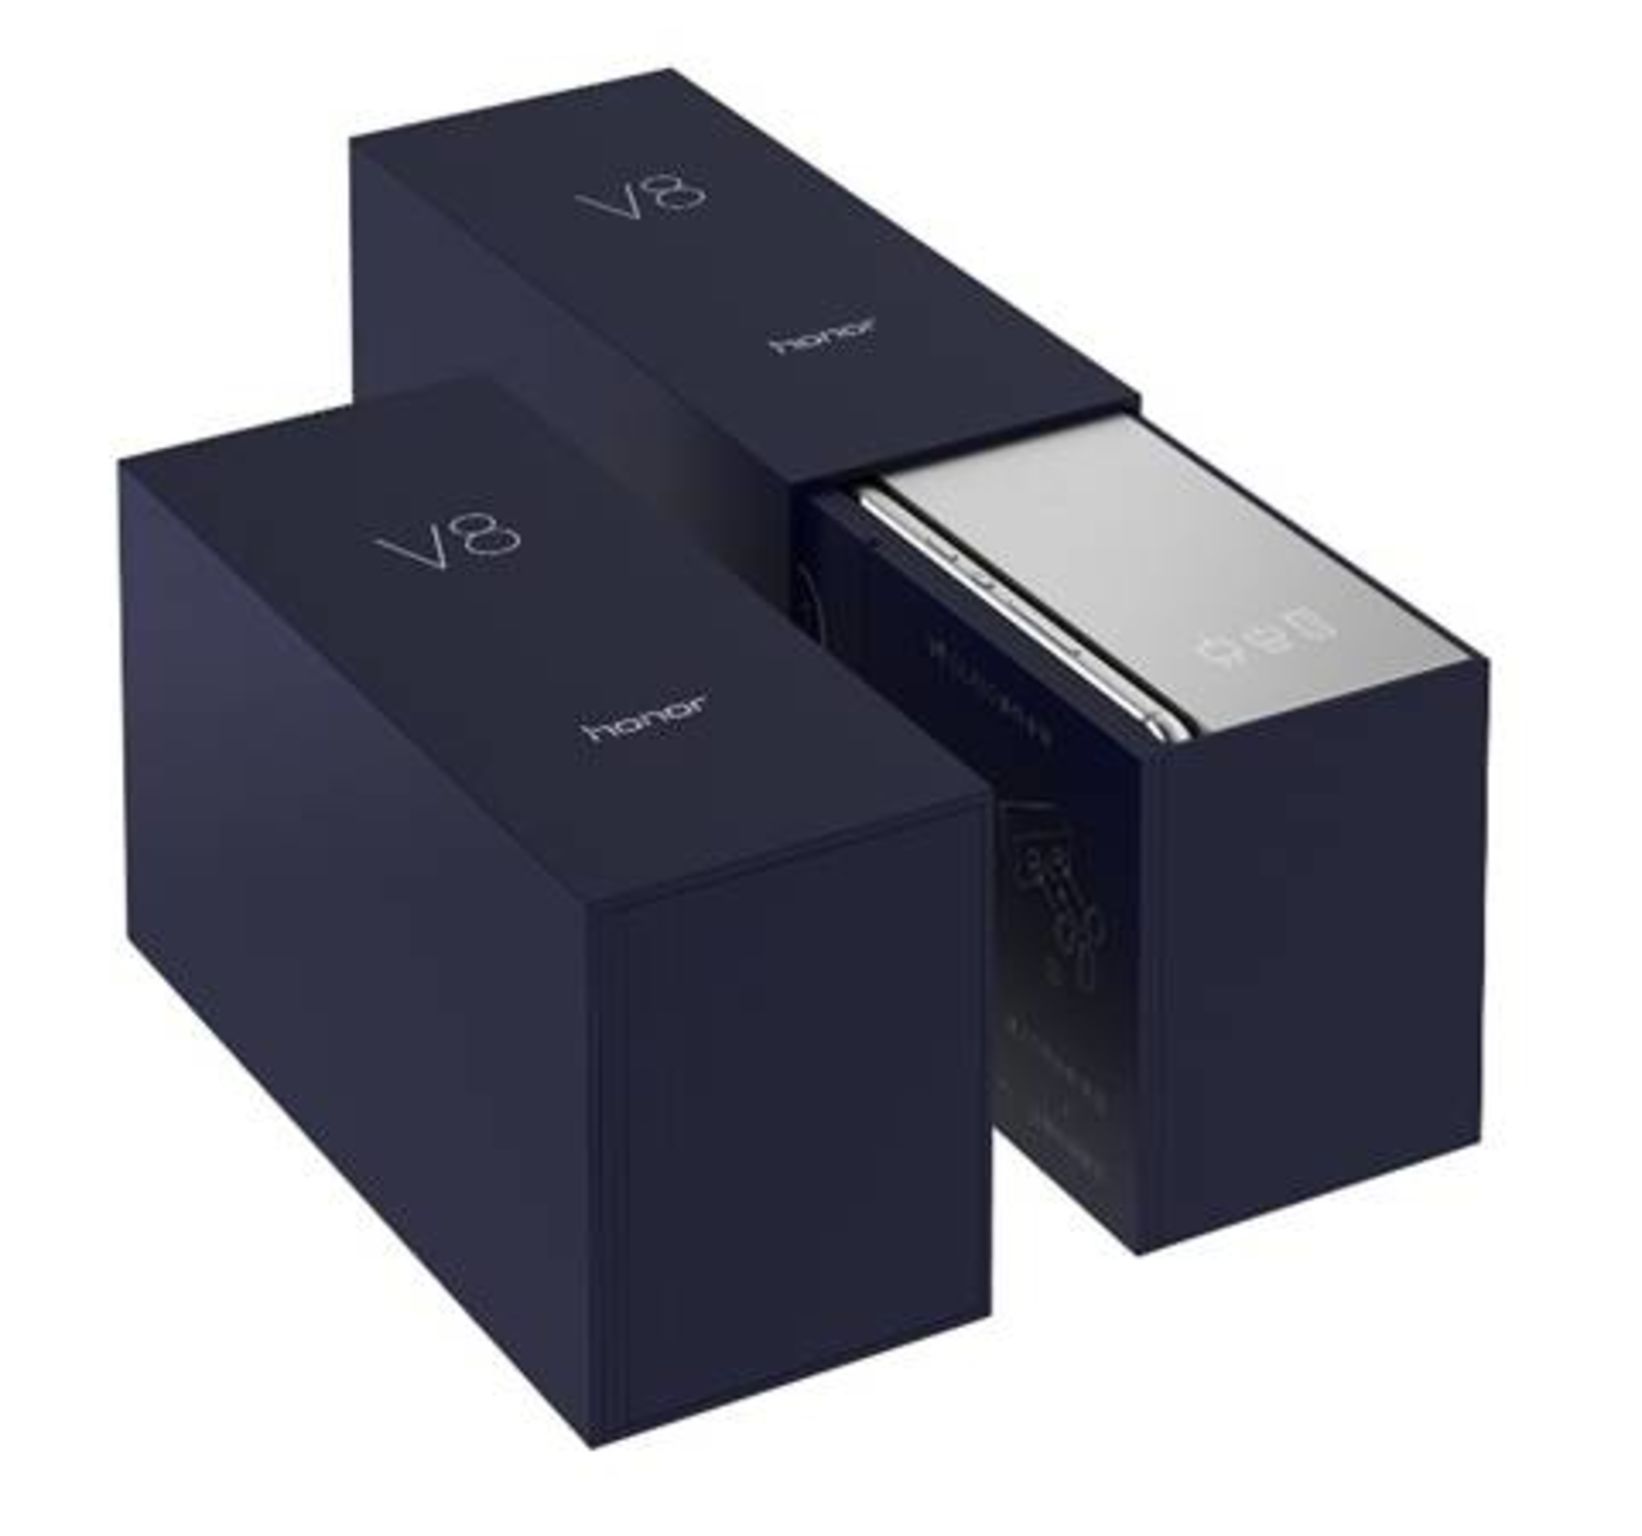 Honor V8 packaging